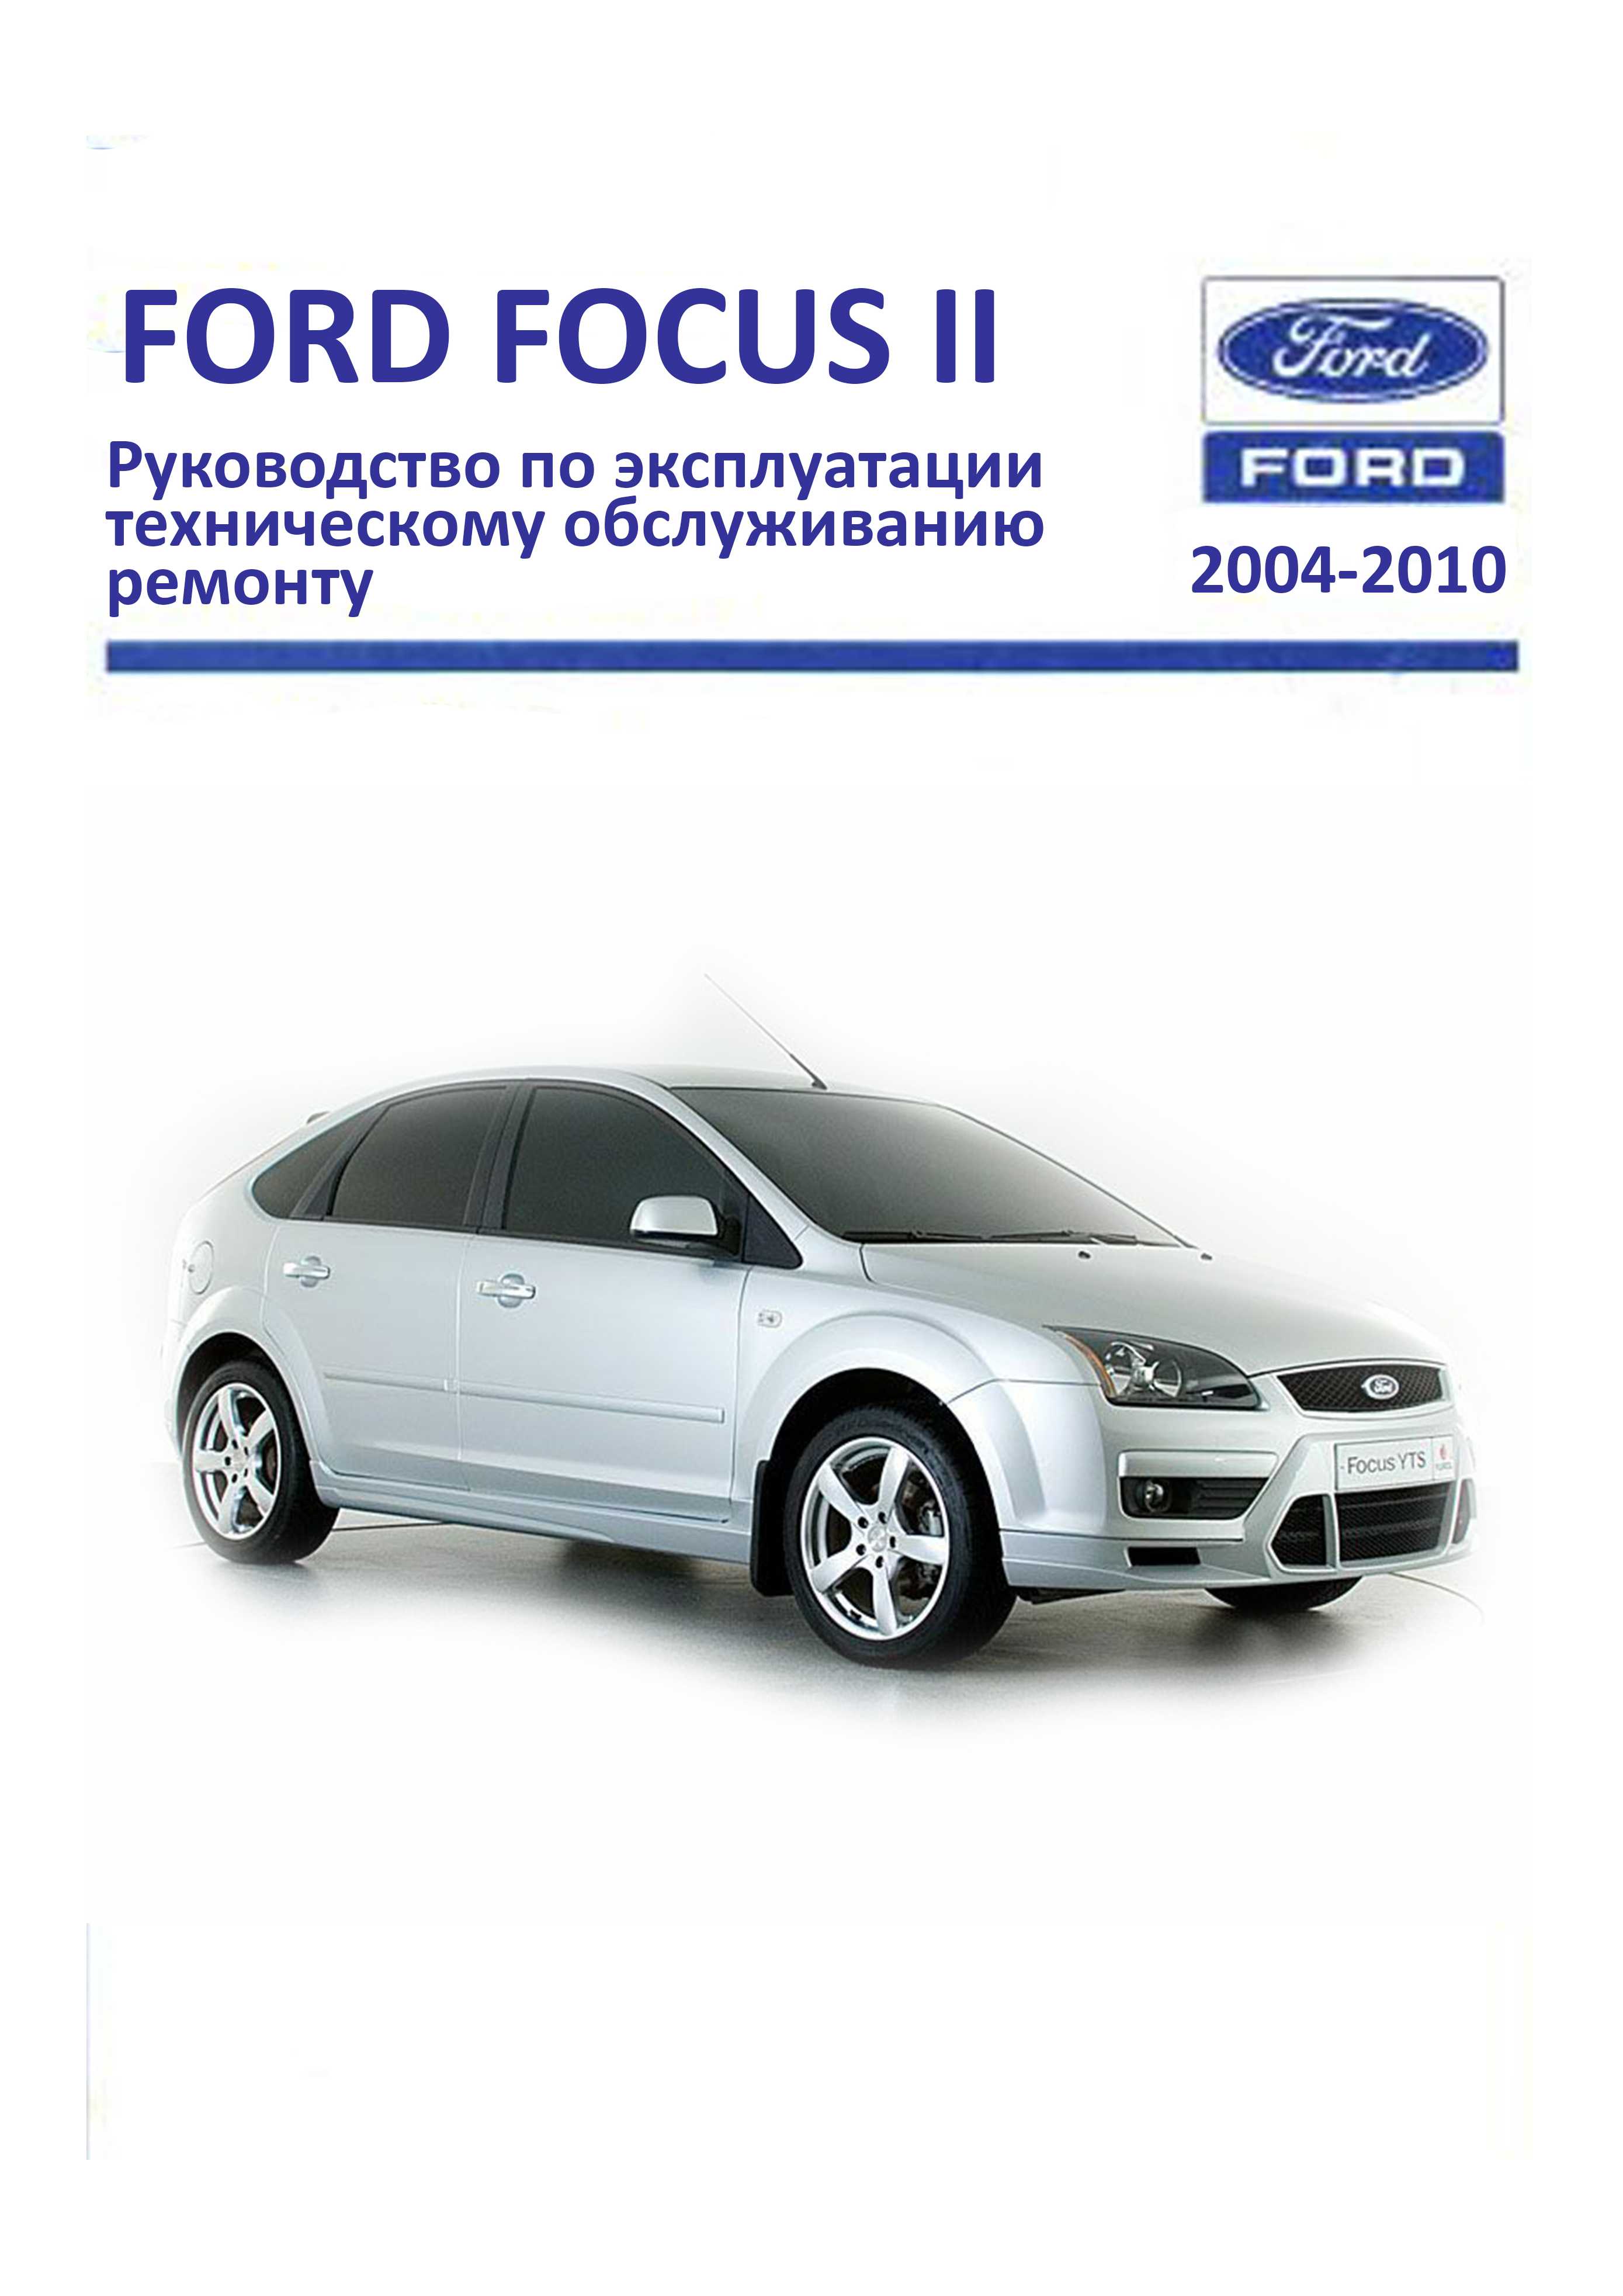 Ford Focus II Duratec Ti-VCT 1.6 л Руководство по эксплуатации, техническому обслуживанию и ремонту обложка